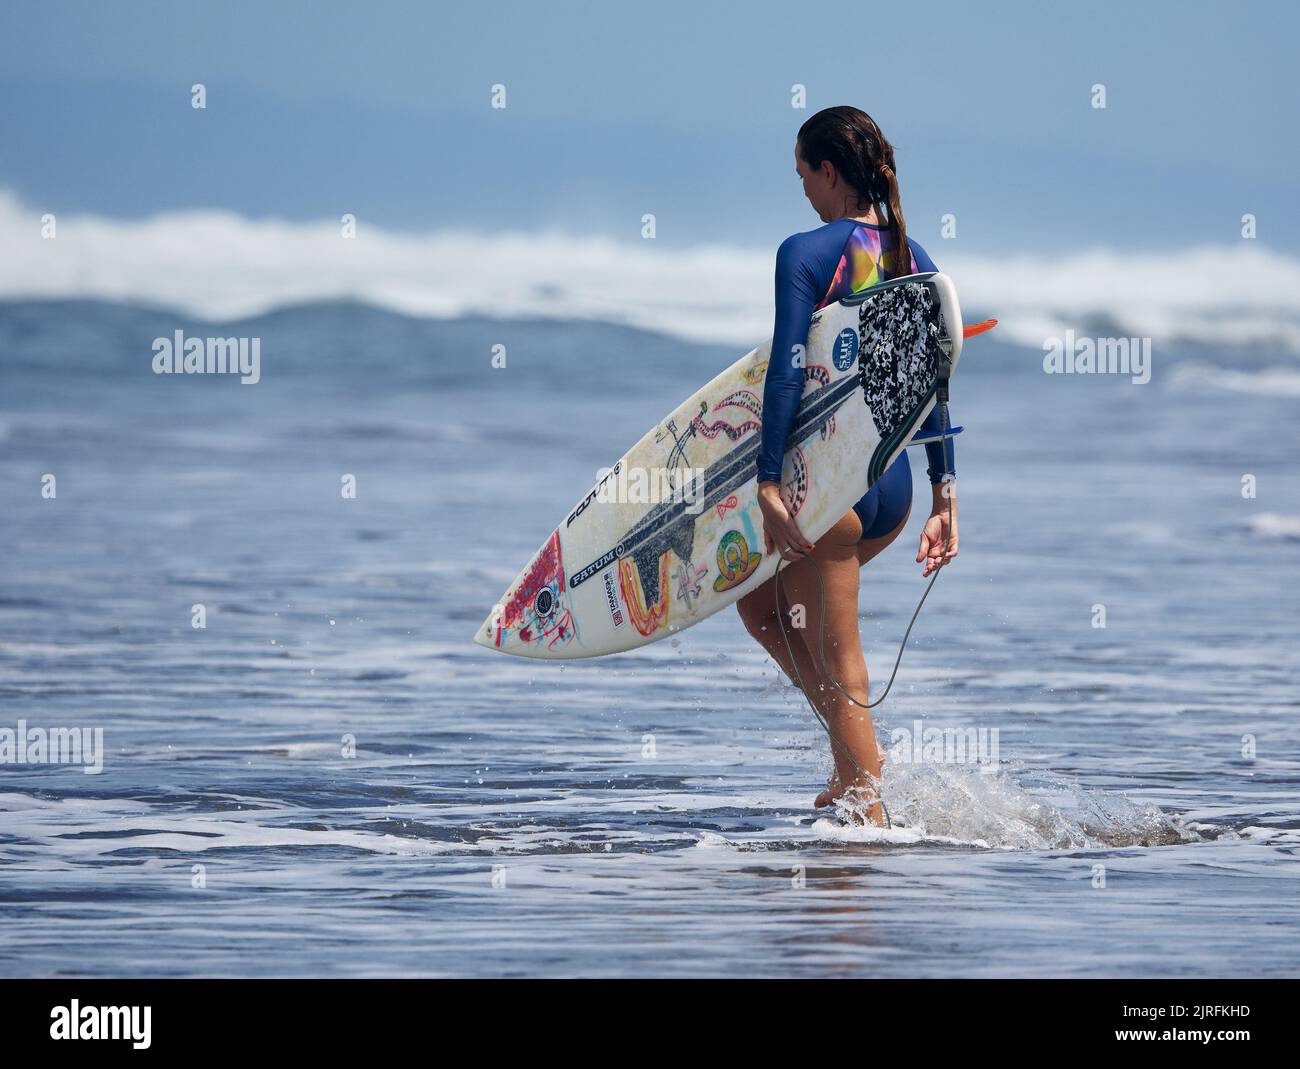 Un surfeur sur la plage de Playa Hermosa au Costa Rica Banque D'Images